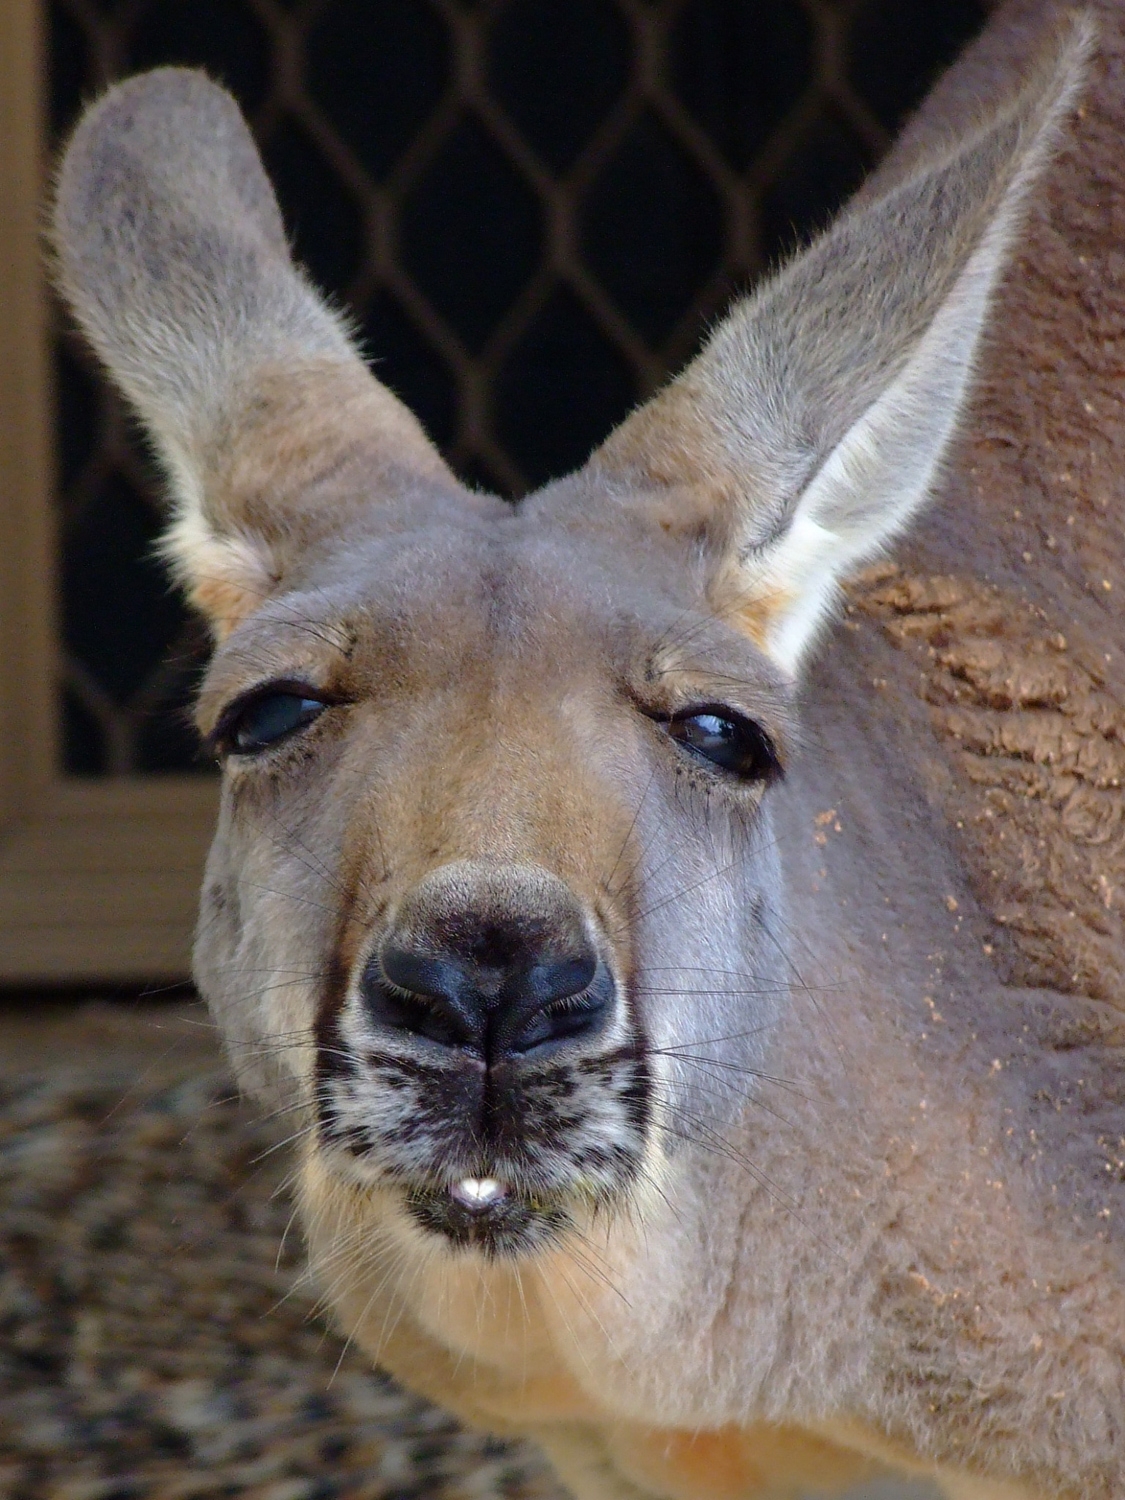 Kangaroo Says "Helloo!"